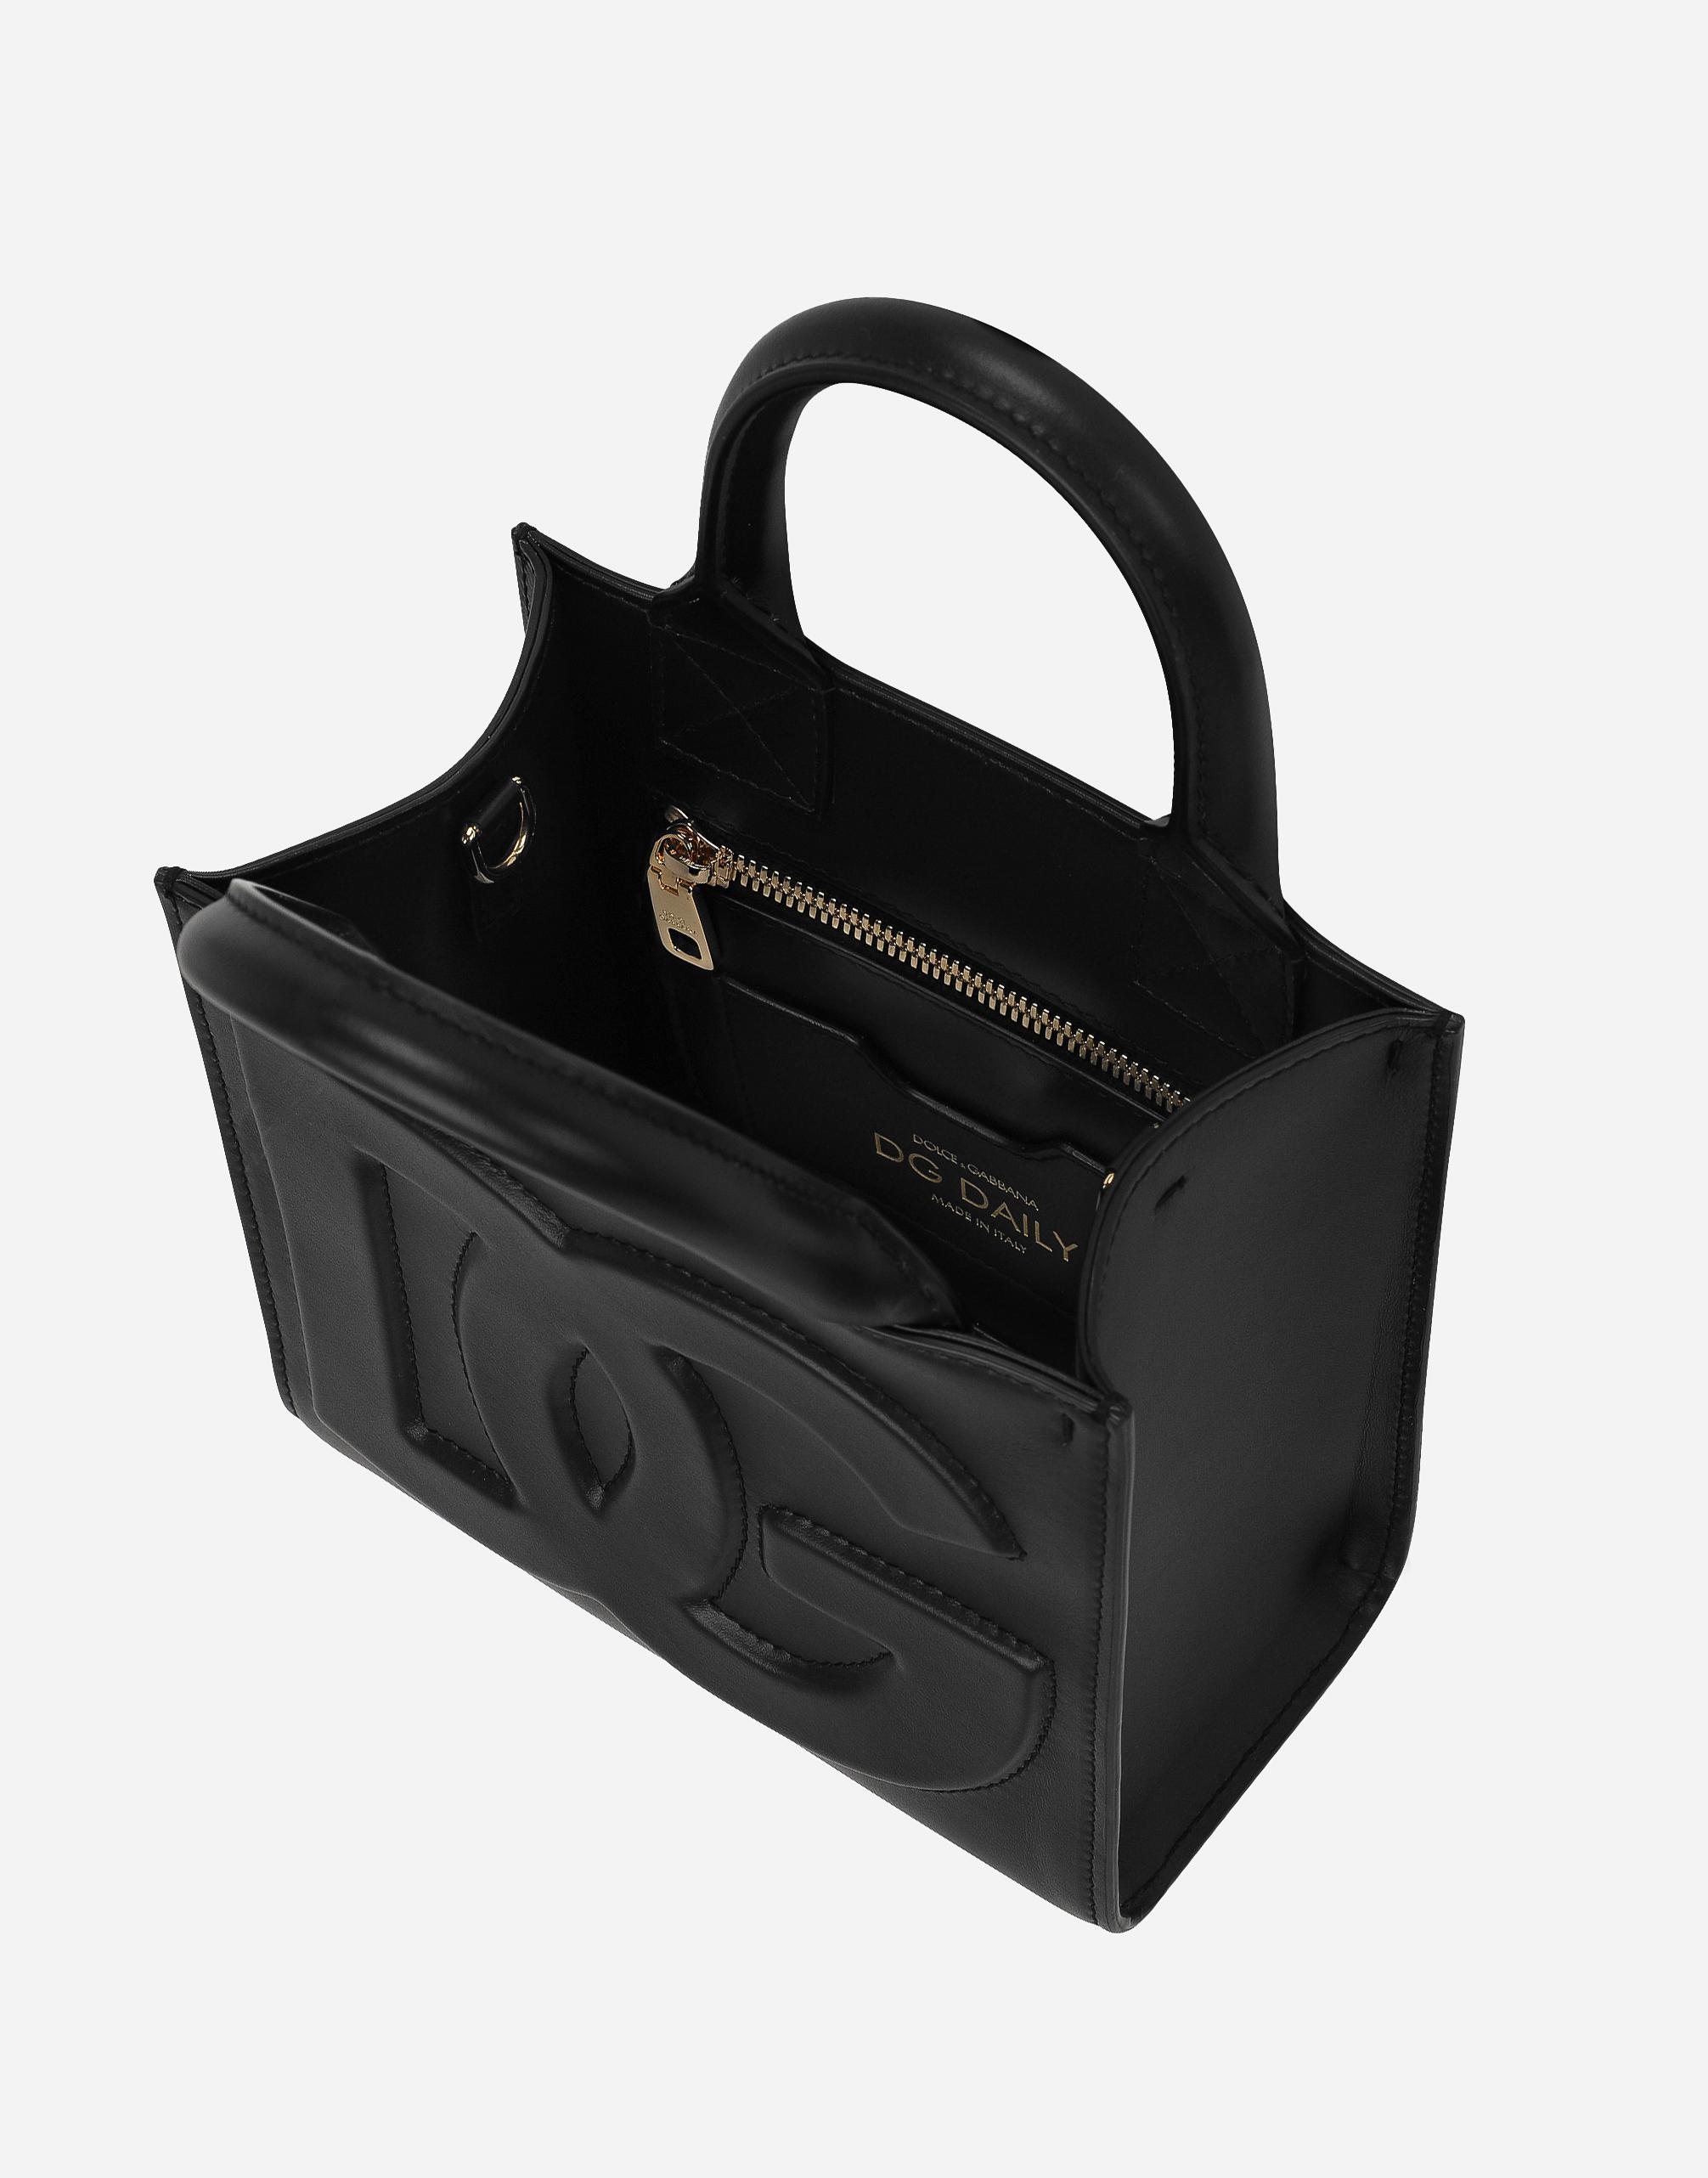 Dolce & Gabbana Dg Daily Mini Shopper in Black